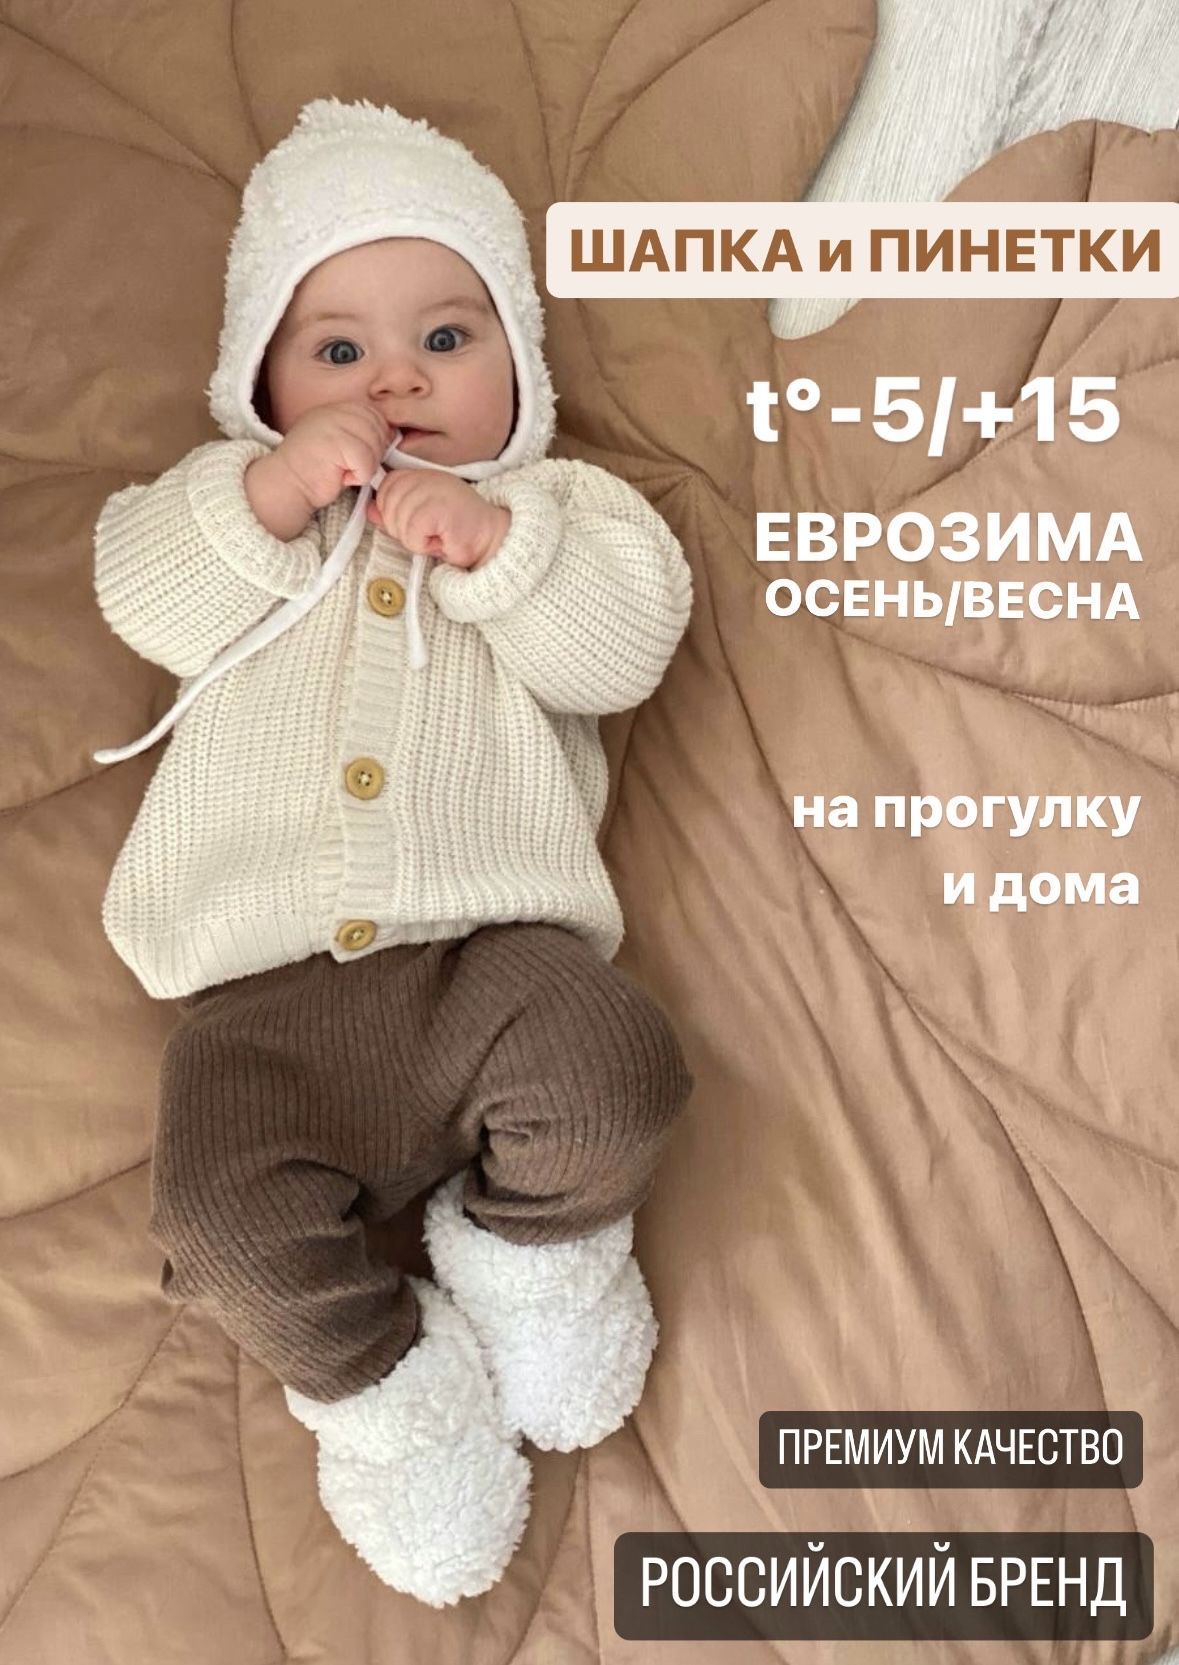 Купить чепчики для новорожденных в интернет-магазине в Москве